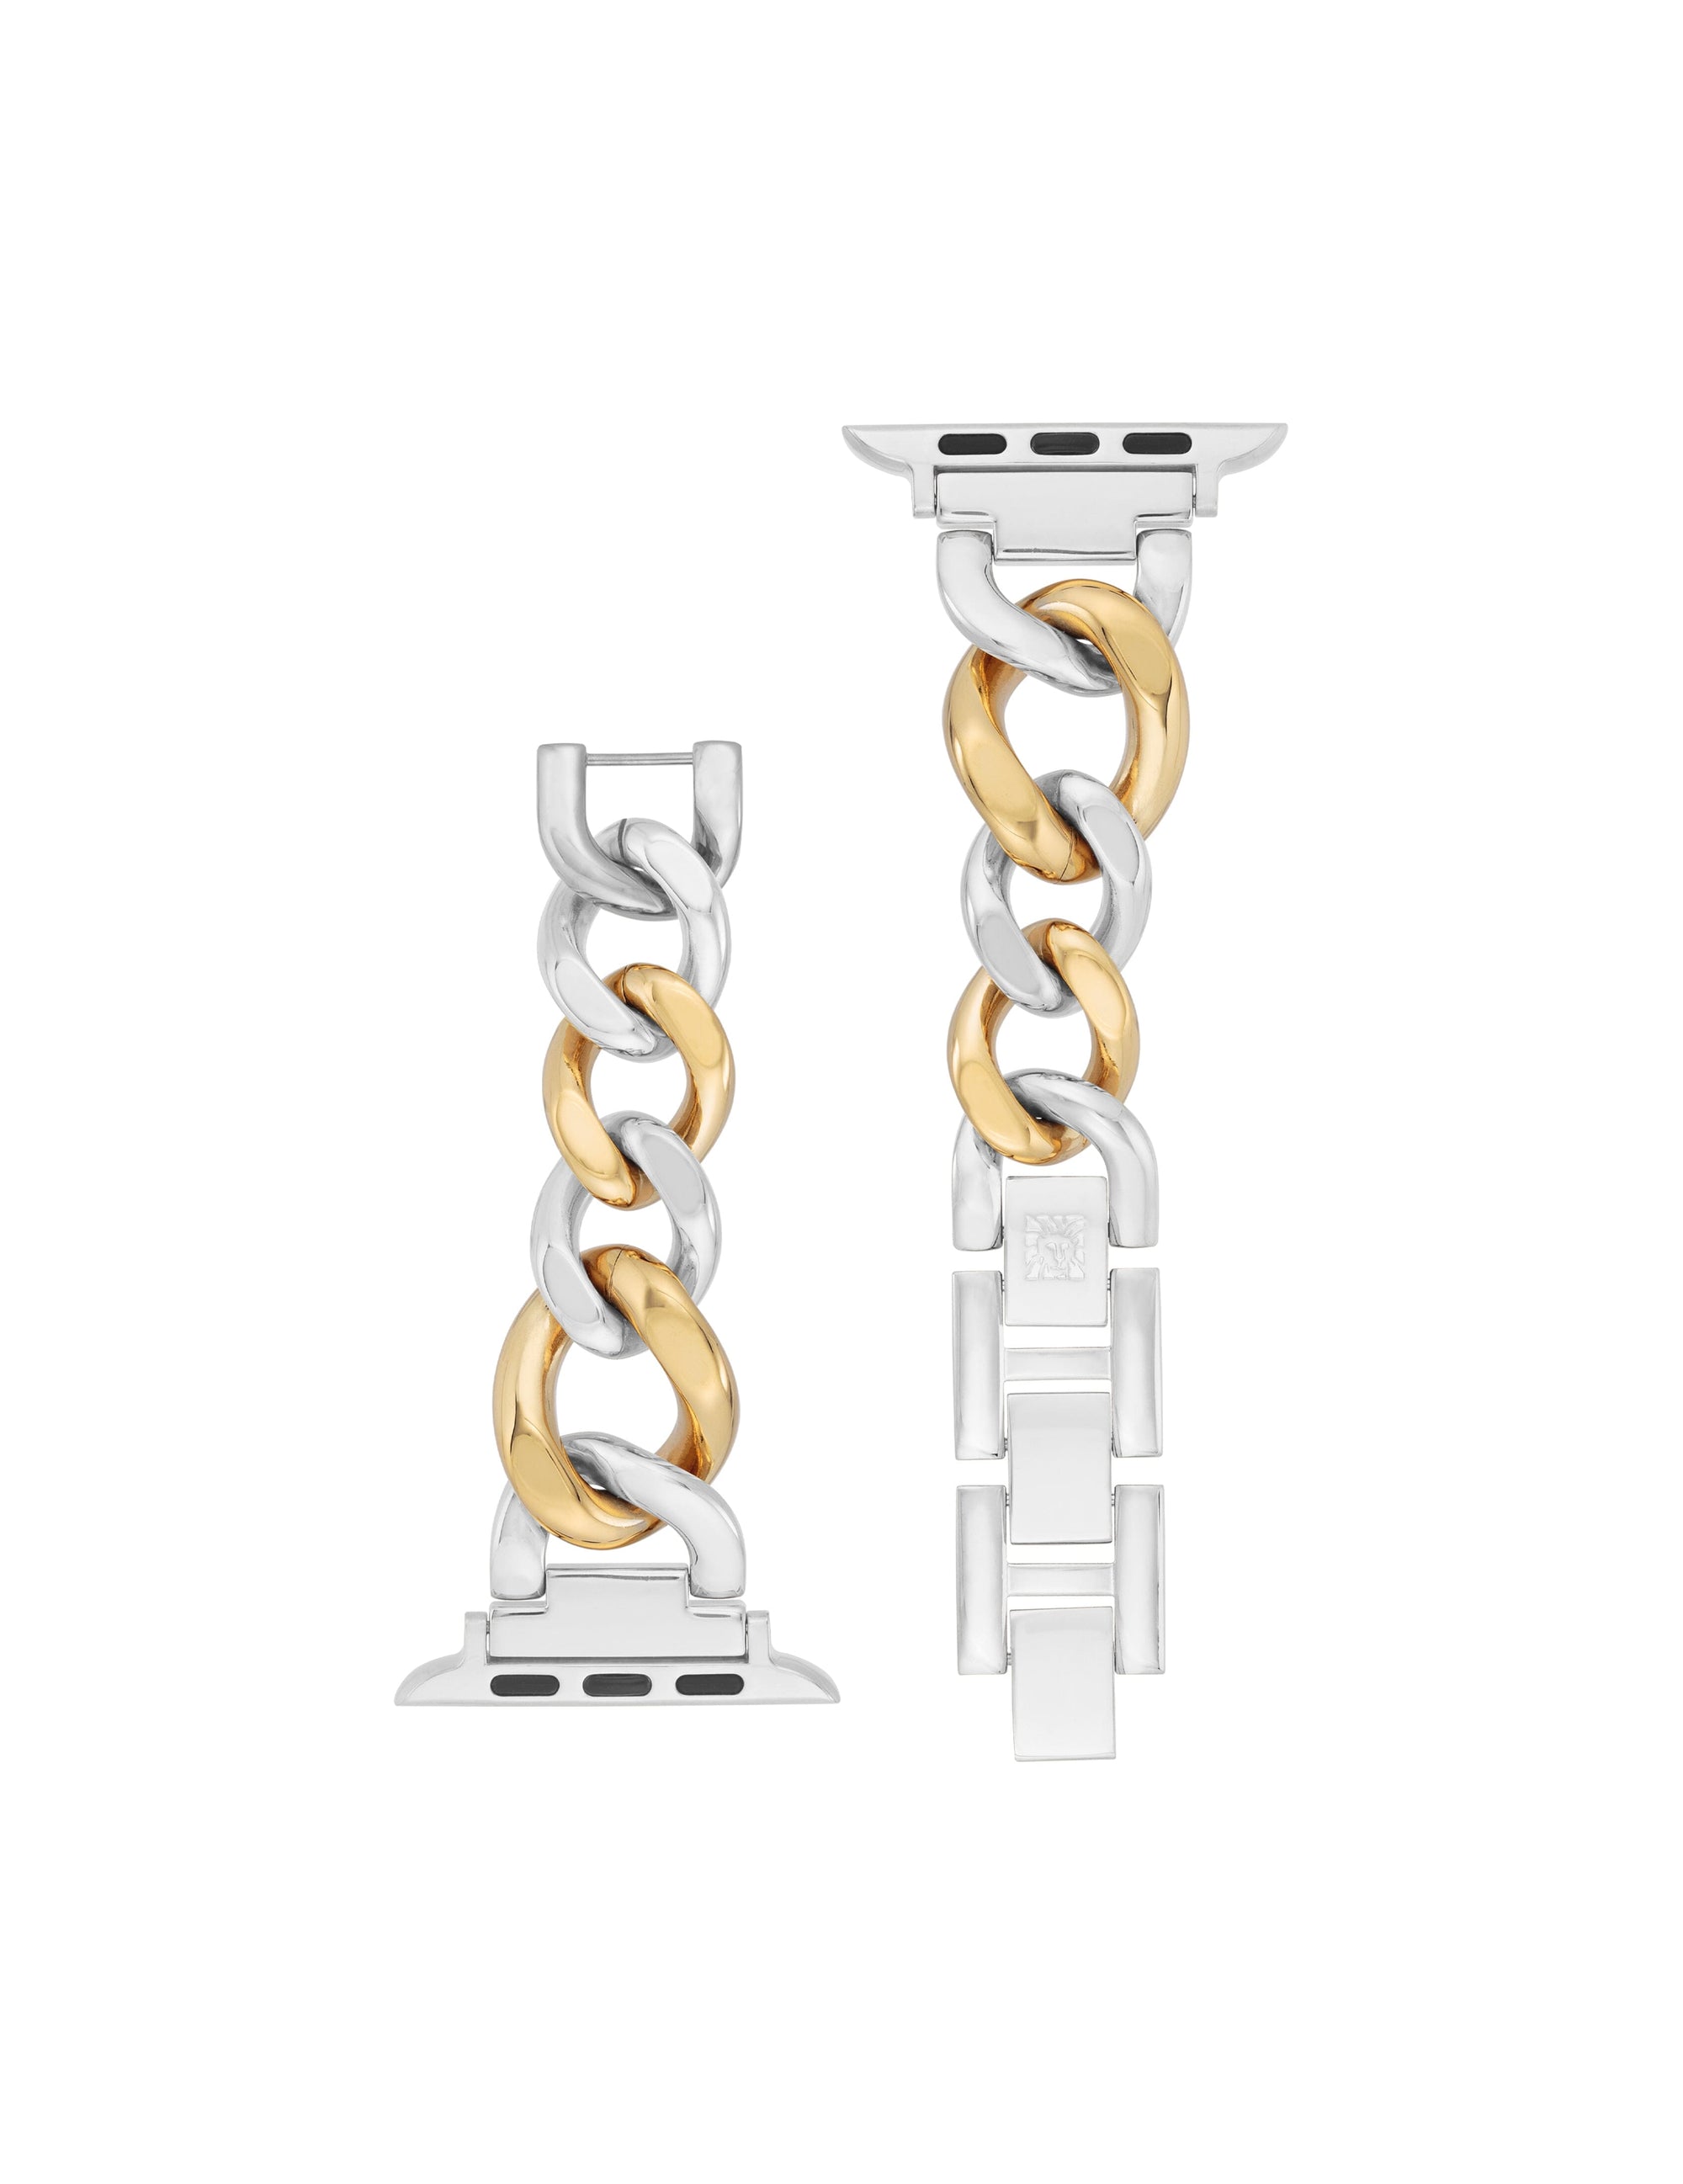 Anne Klein Loop Chain Belt 26 - 44 Adjustable Gold Tone Waist Chain